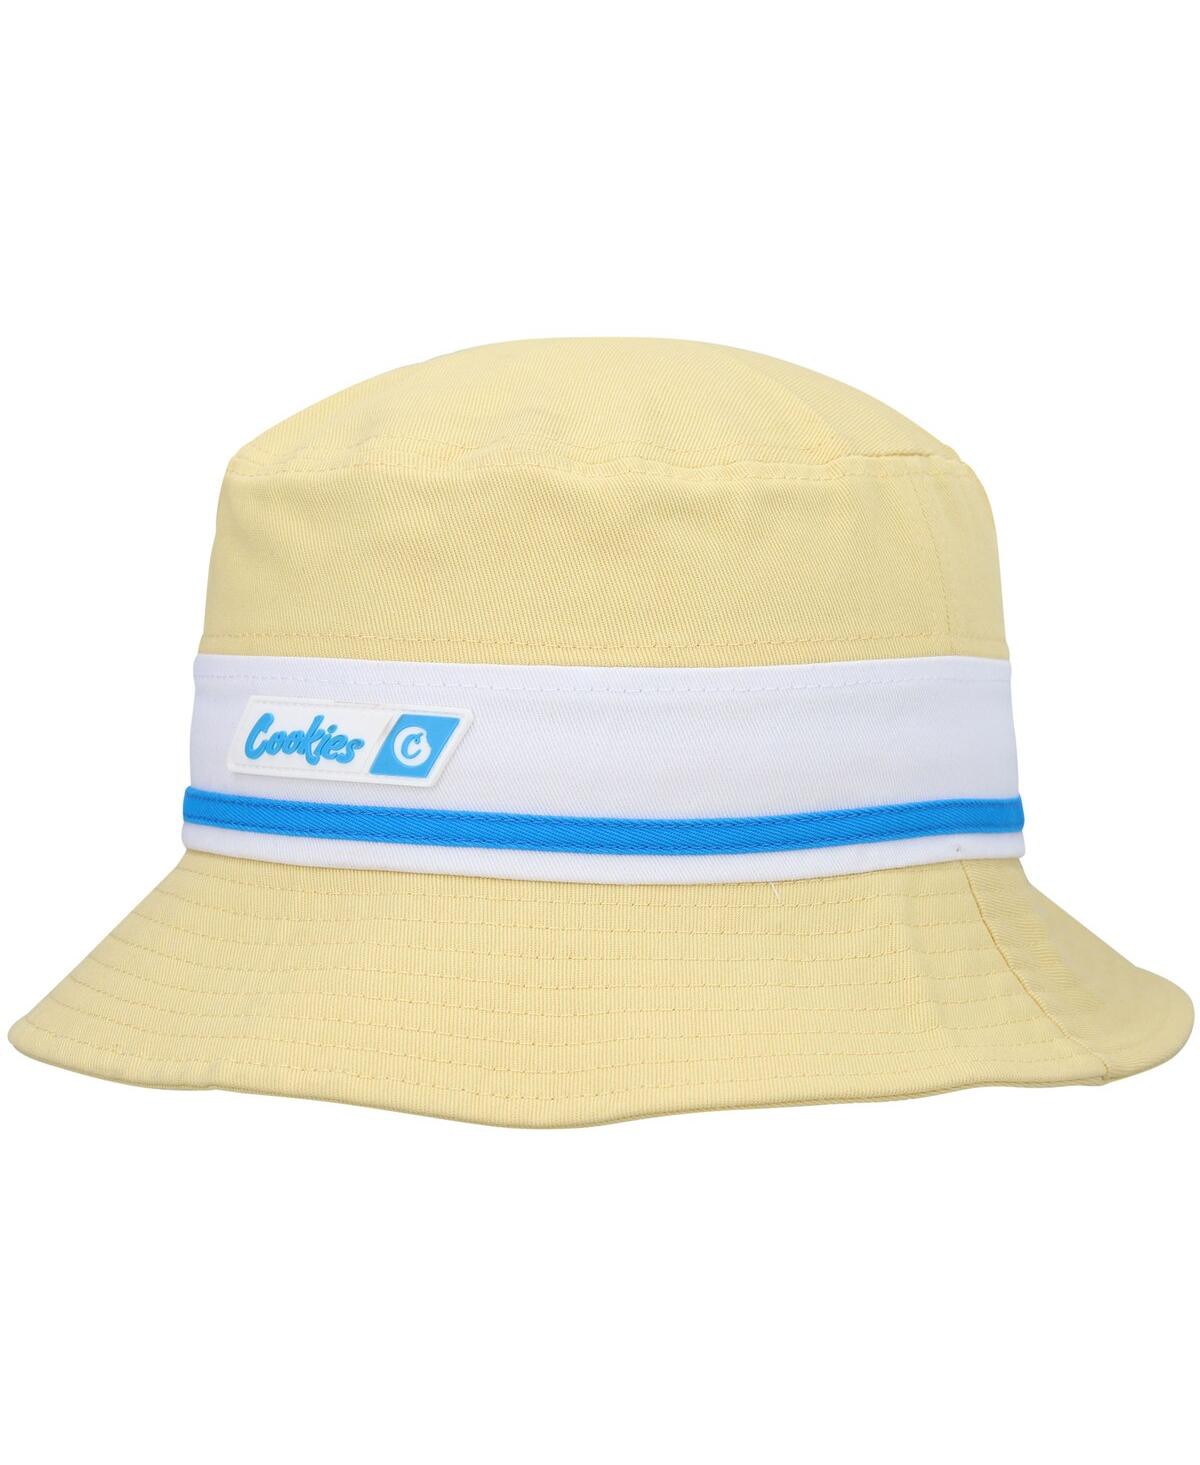 Cookies Men's  Yellow Bal Harbor Bucket Hat